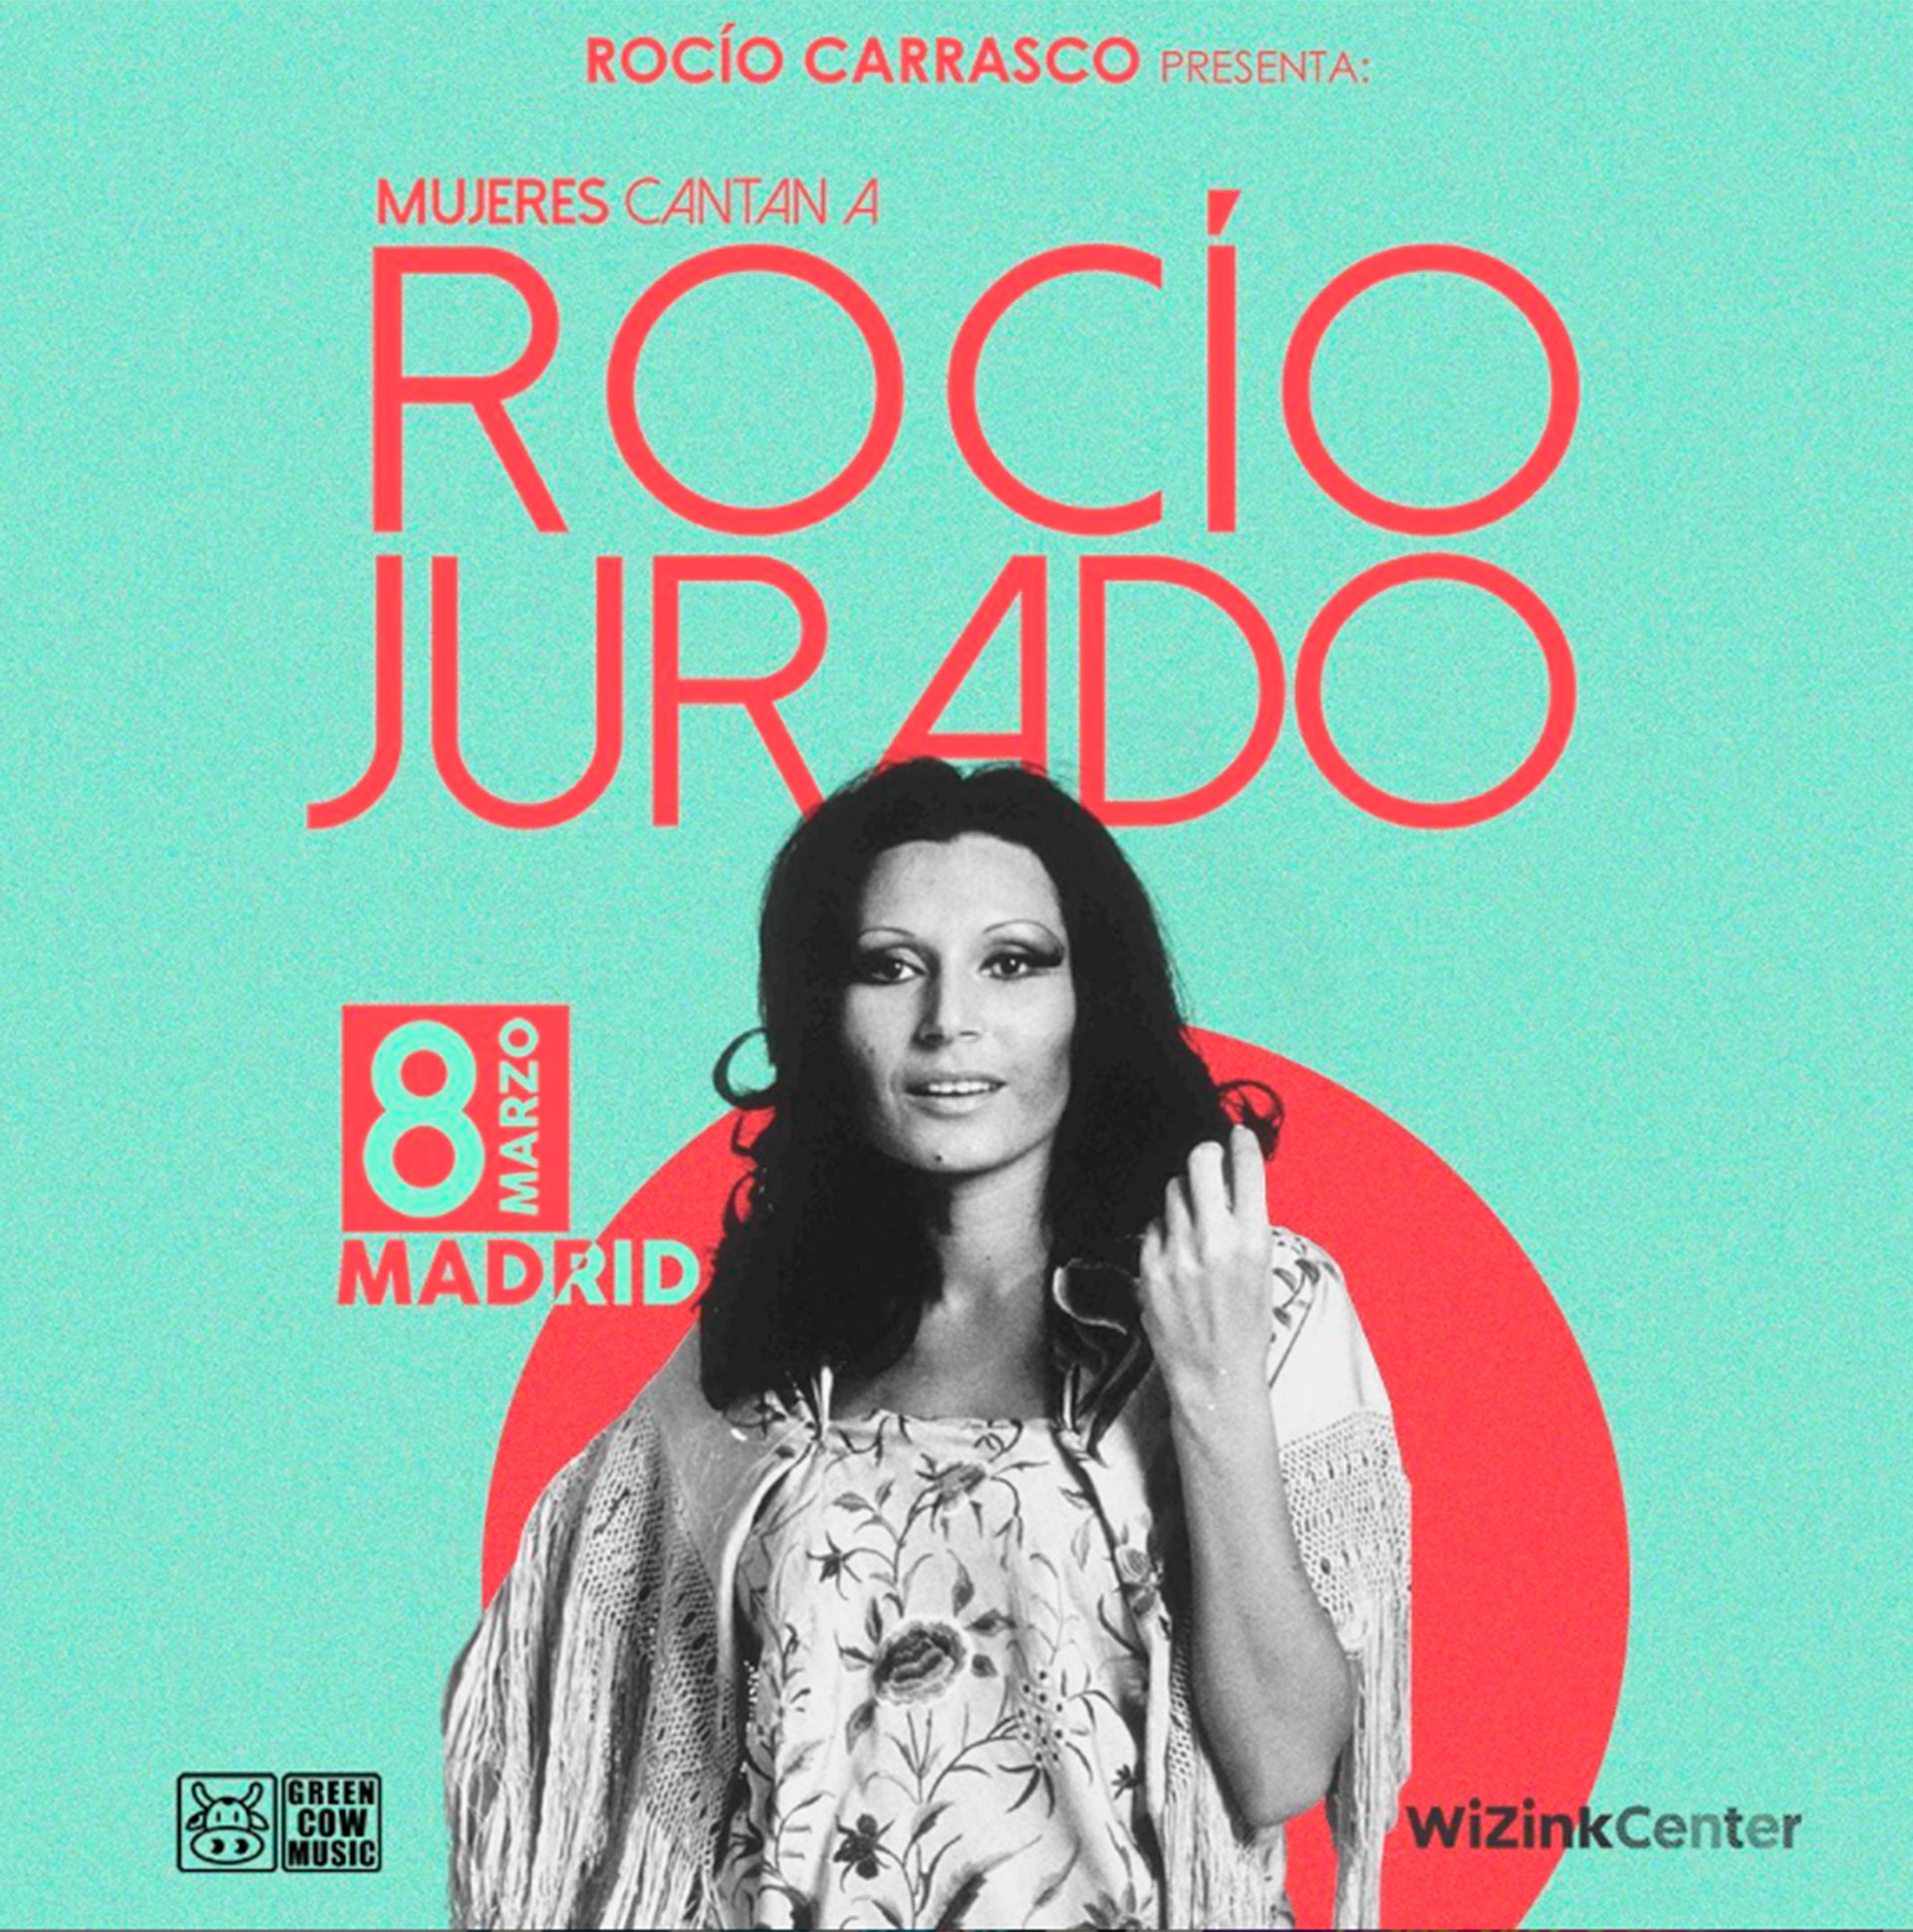 La cláusula de Rocío Carrasco que cabreó a las cantantes del homenaje a su madre